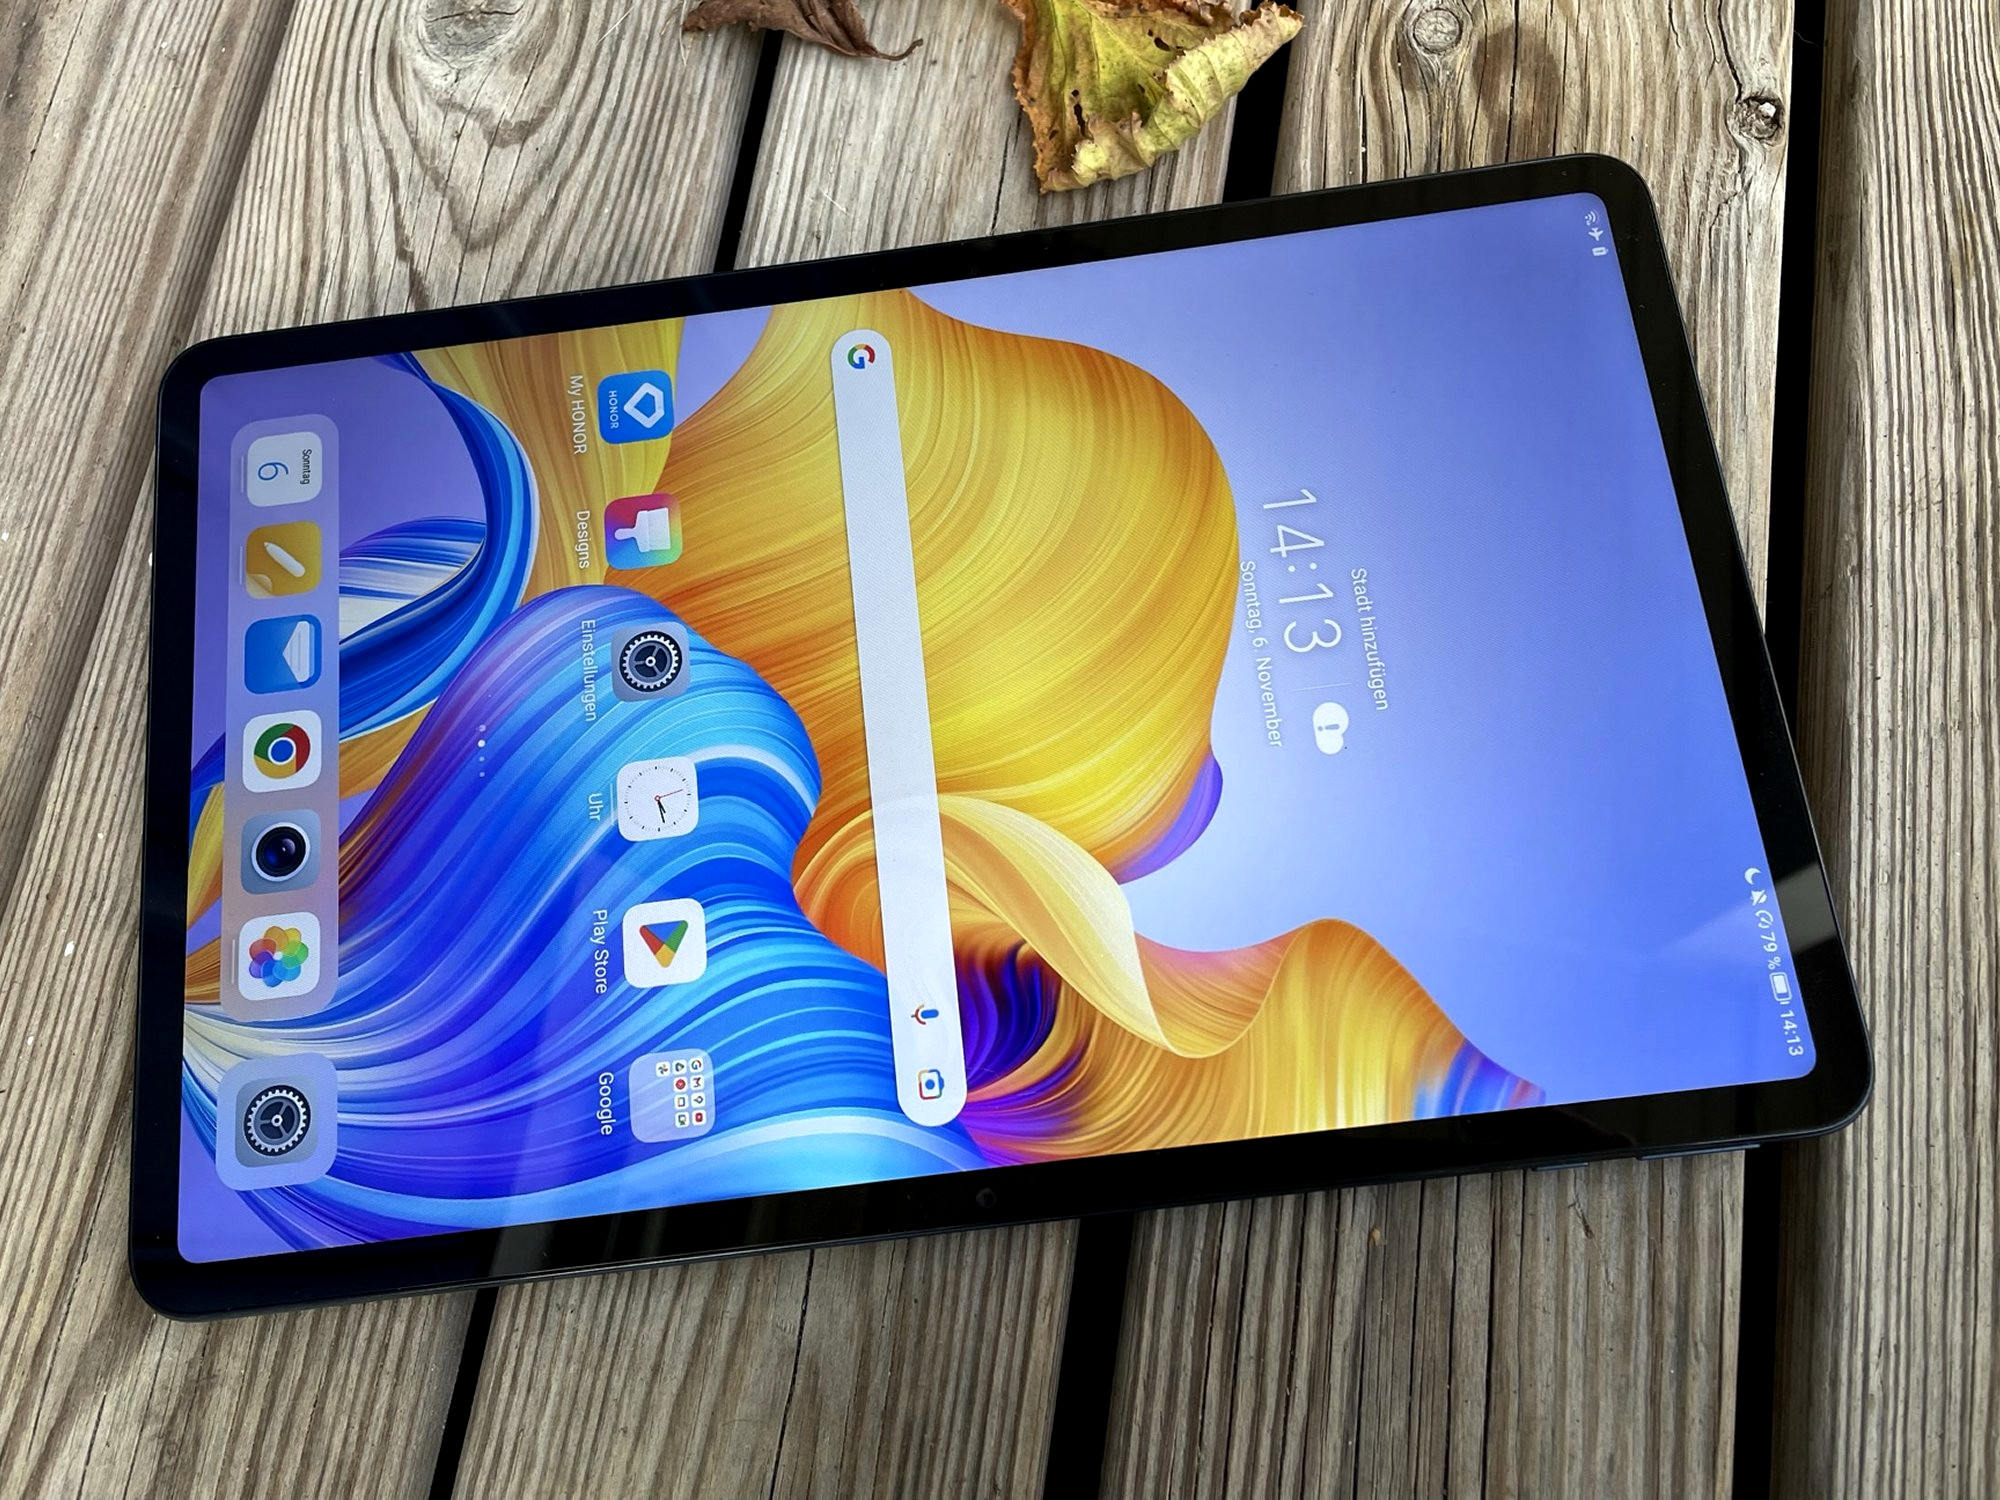 Reseña de la tablet yestel 11 pulgadas android 13 - ¡la mejor